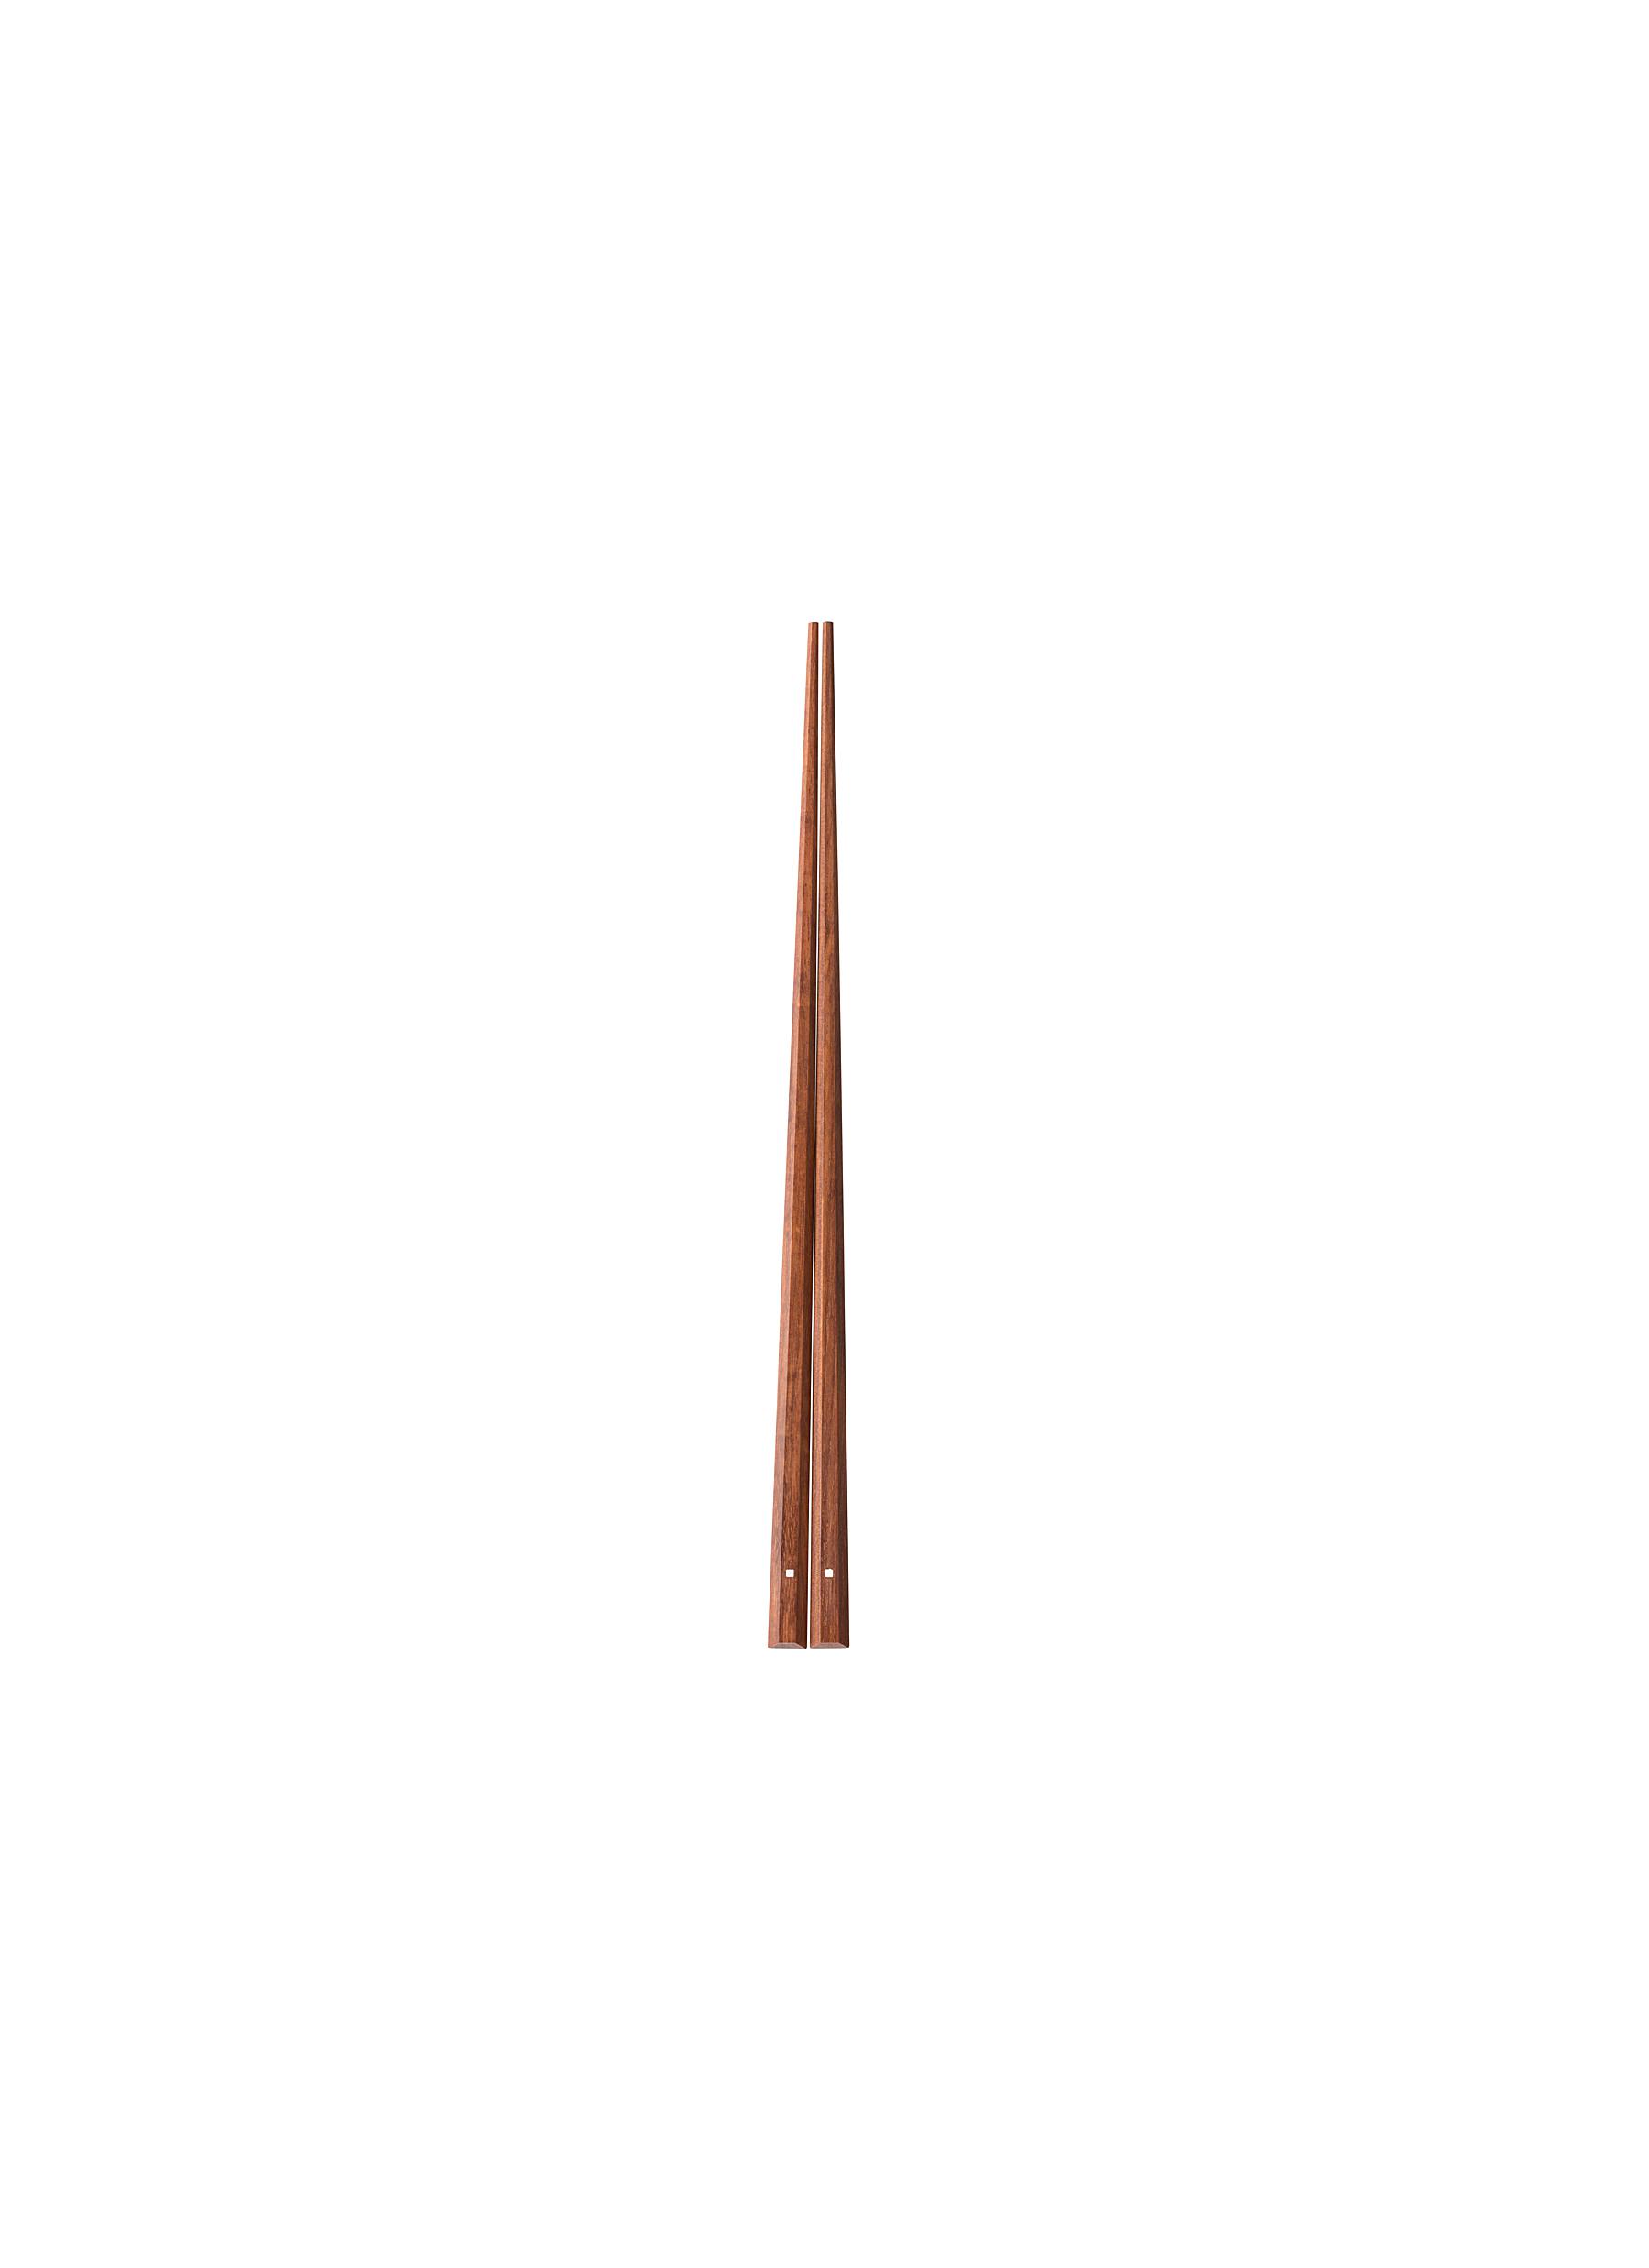 Deluxe Model Eight-sided Hyakunen Granadillo Chopsticks